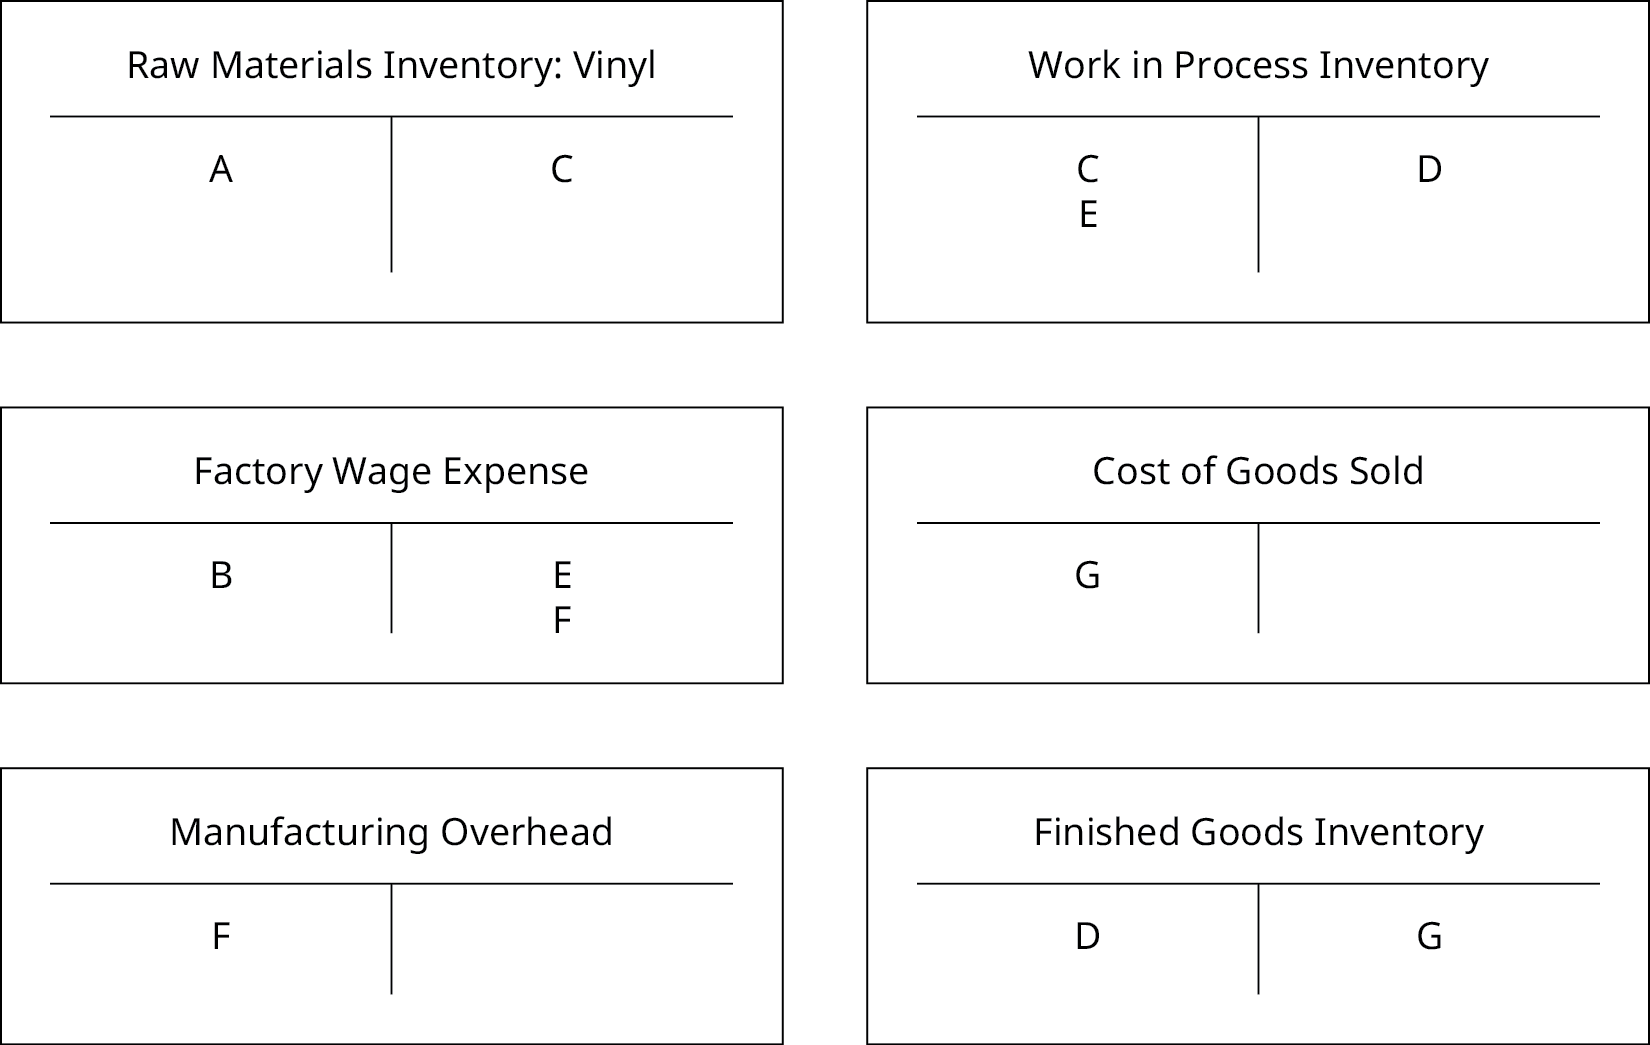 六个 T 型账户：“原材料库存：黑胶唱片”、“工厂工资支出”、“制造管理费用”、“在制品库存”、“销售成本” 和 “成品库存” 各一个。 “原材料库存：黑胶唱片” 在借方有 A，贷方有 C，“工厂工资支出” 在借方有 B，贷方有 E 和 F，“制造开销” 在借方有 F，“在制库存” 在借方有 C 和 E，贷方有 D，“销售成本” 的借方为 G，“成品库存” 的借方为 D，贷方为 G。